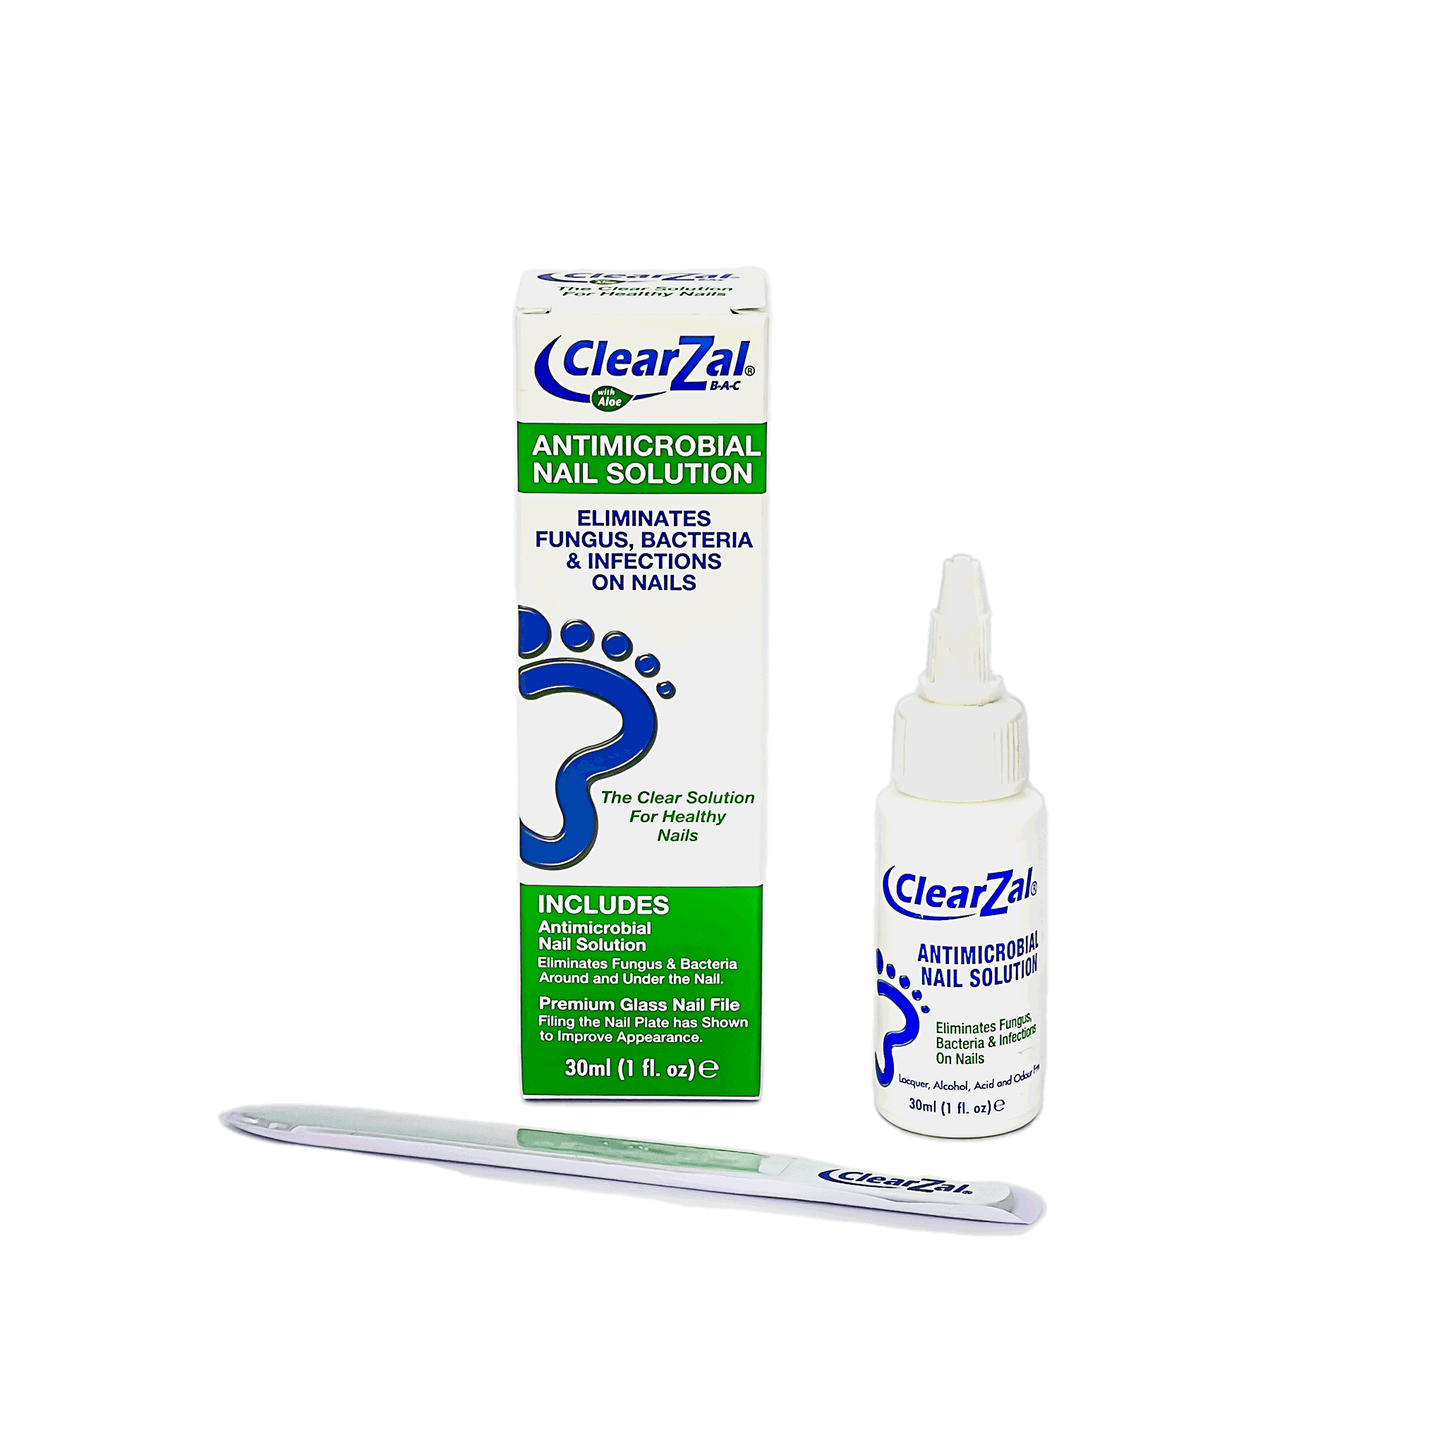 CLEARZAL ® Solución antimicrobiana para uñas